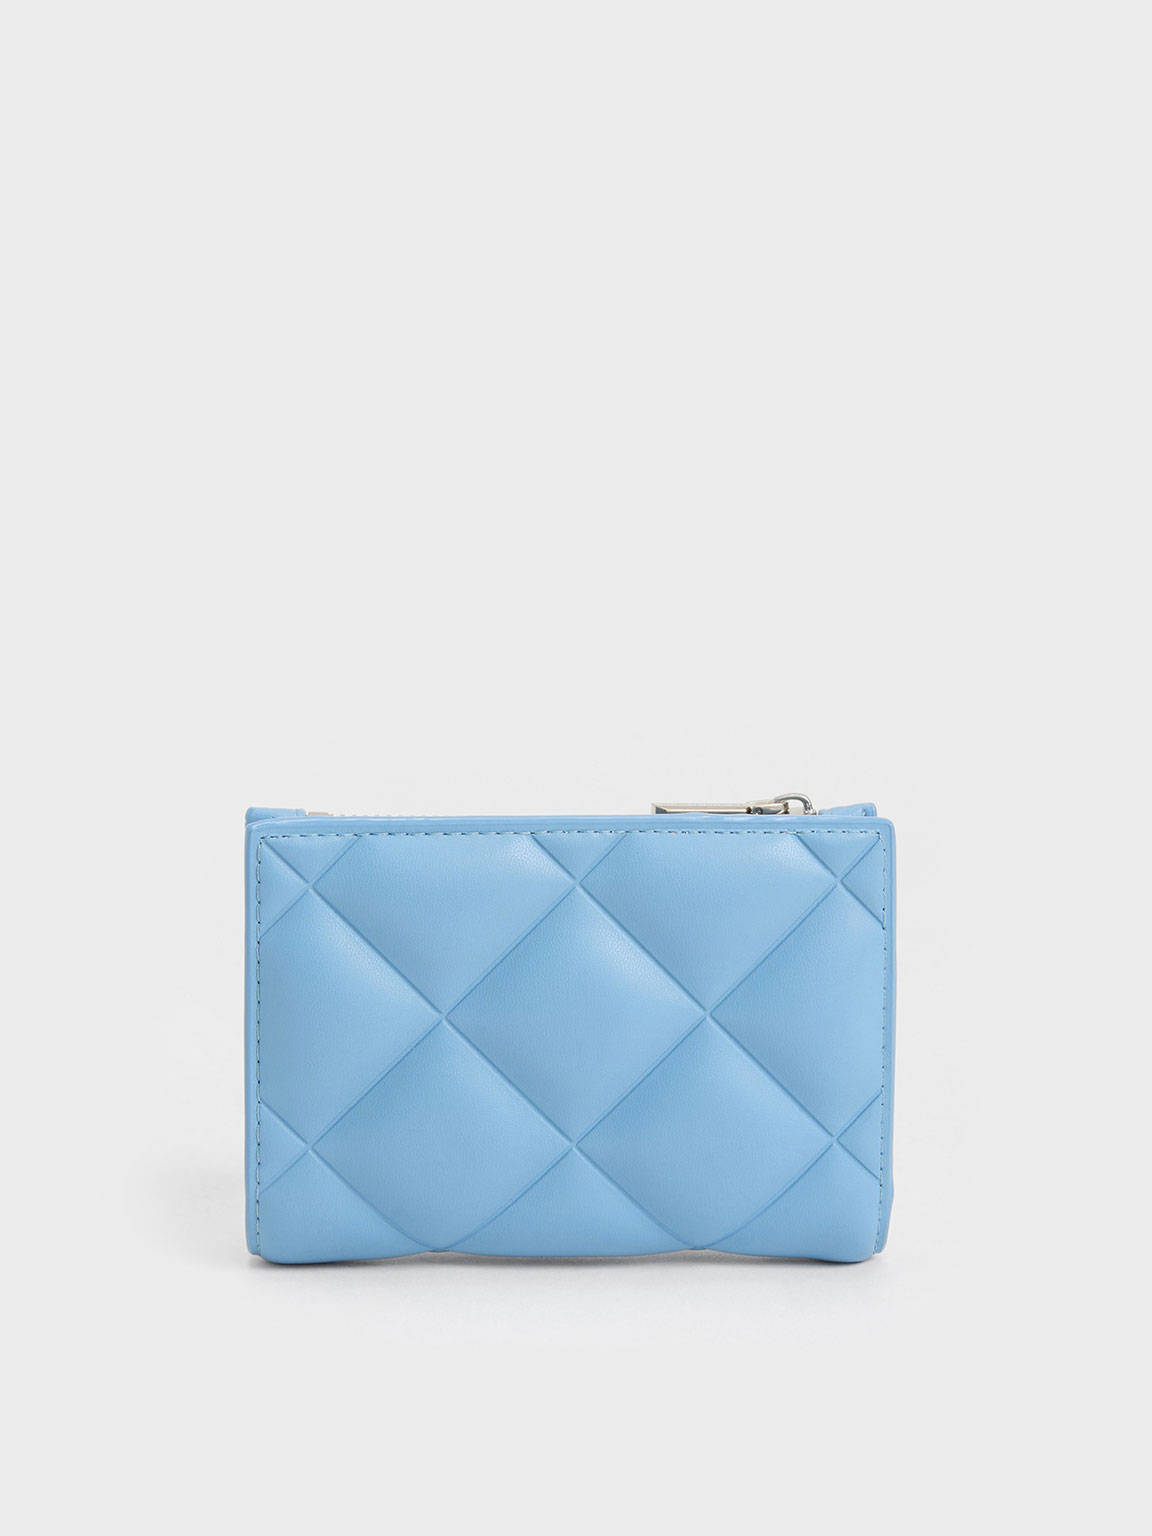 Chanel Women's Blue Wallets & Card Holders